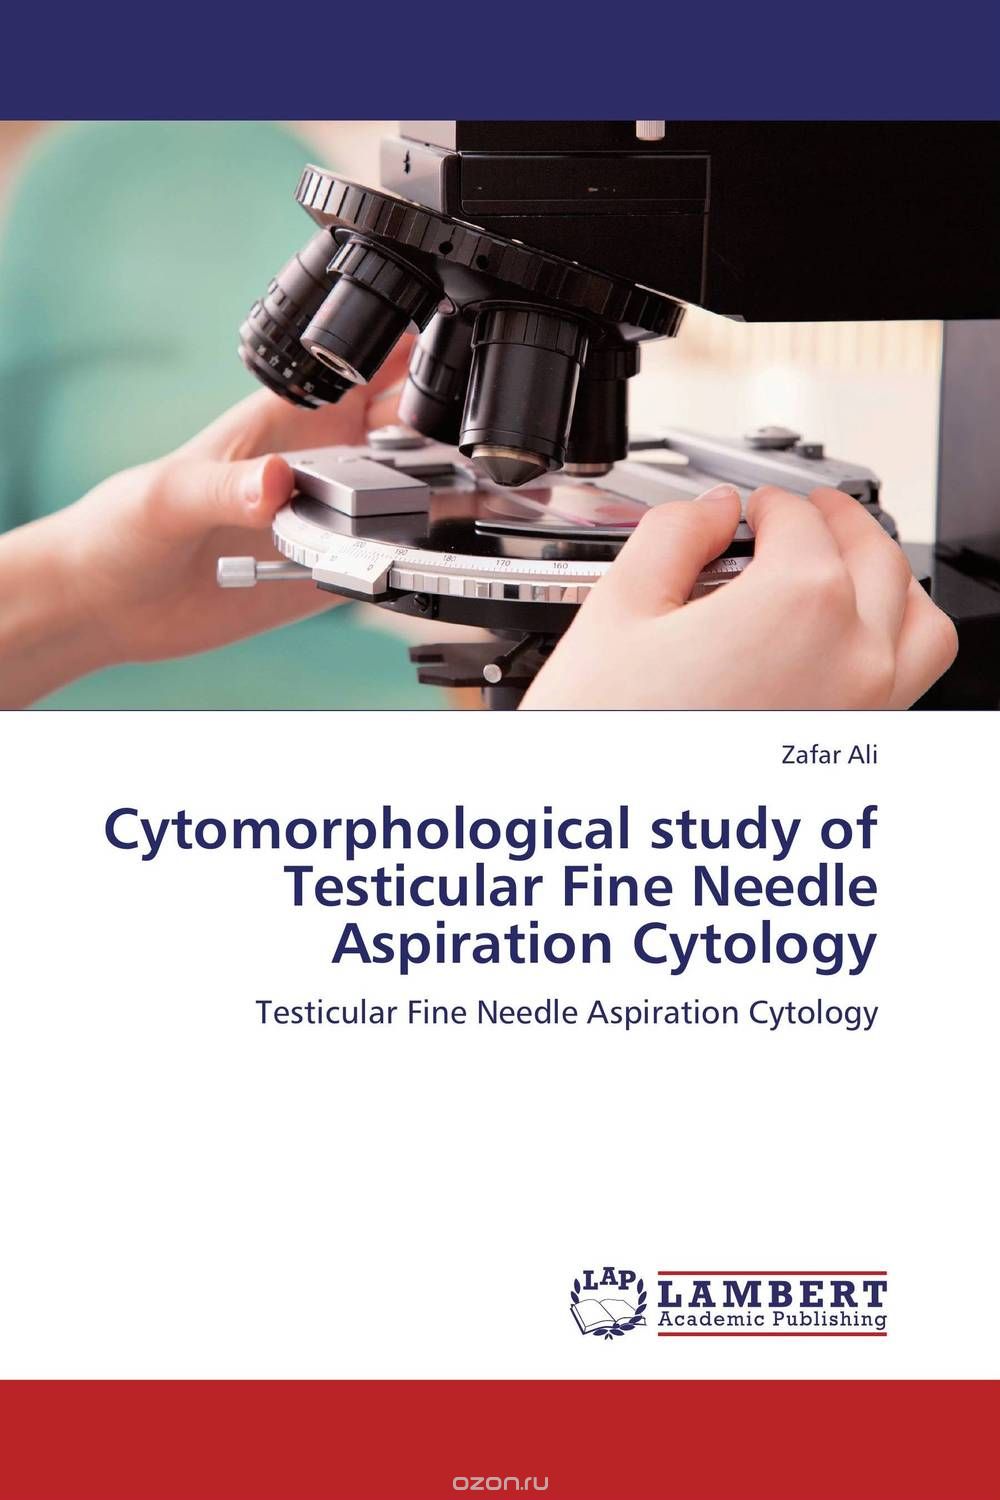 Скачать книгу "Cytomorphological study of Testicular Fine Needle Aspiration Cytology"